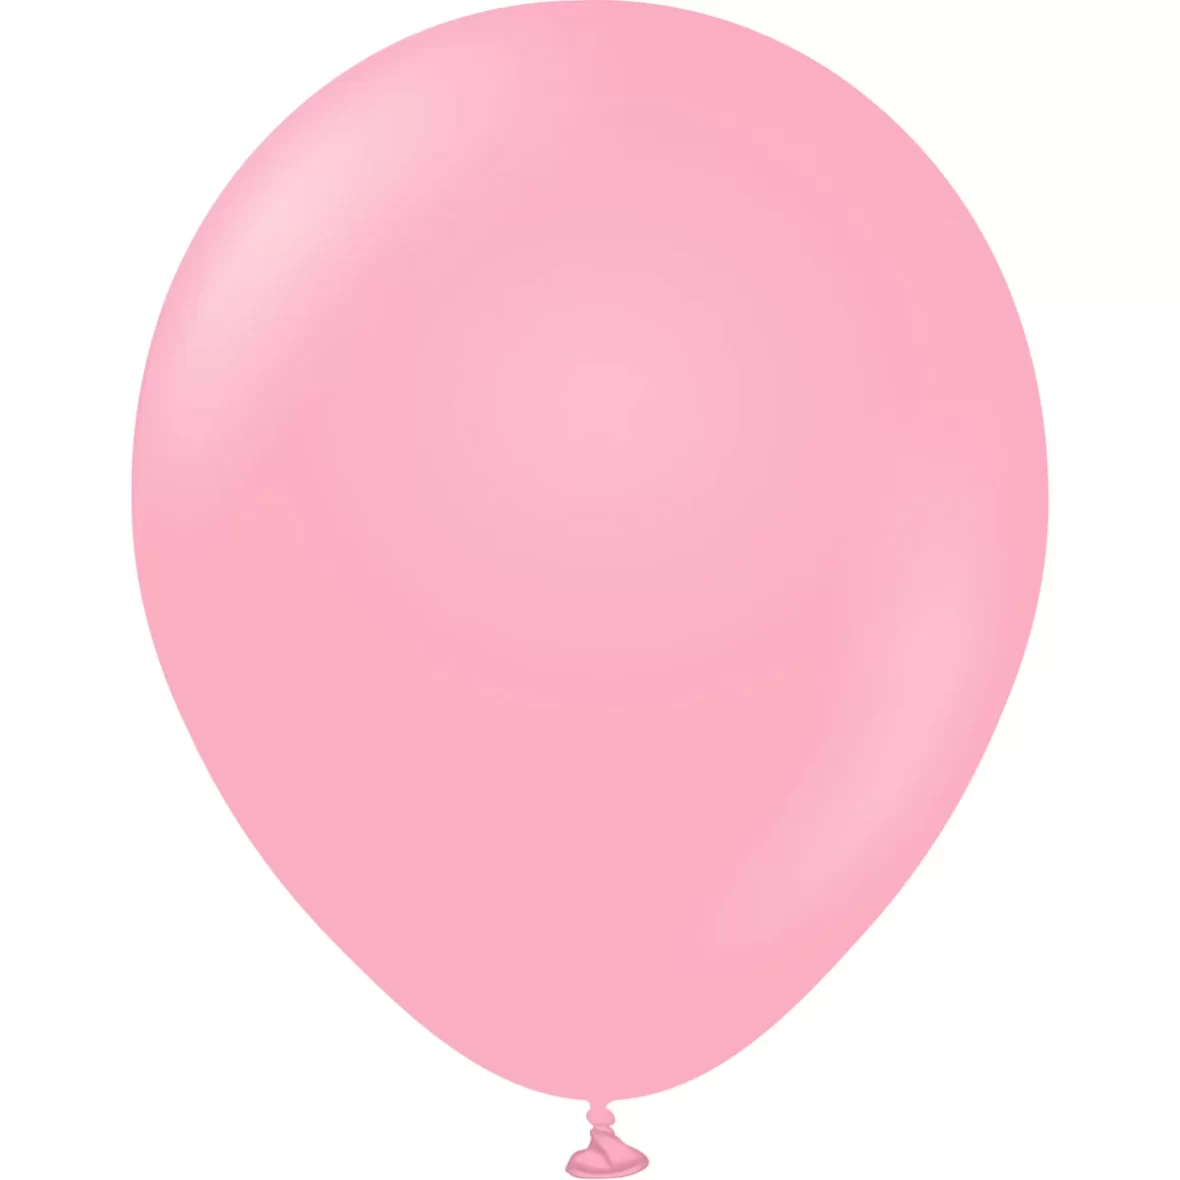 979-baloane-jumbo-ovale-45-cm-4